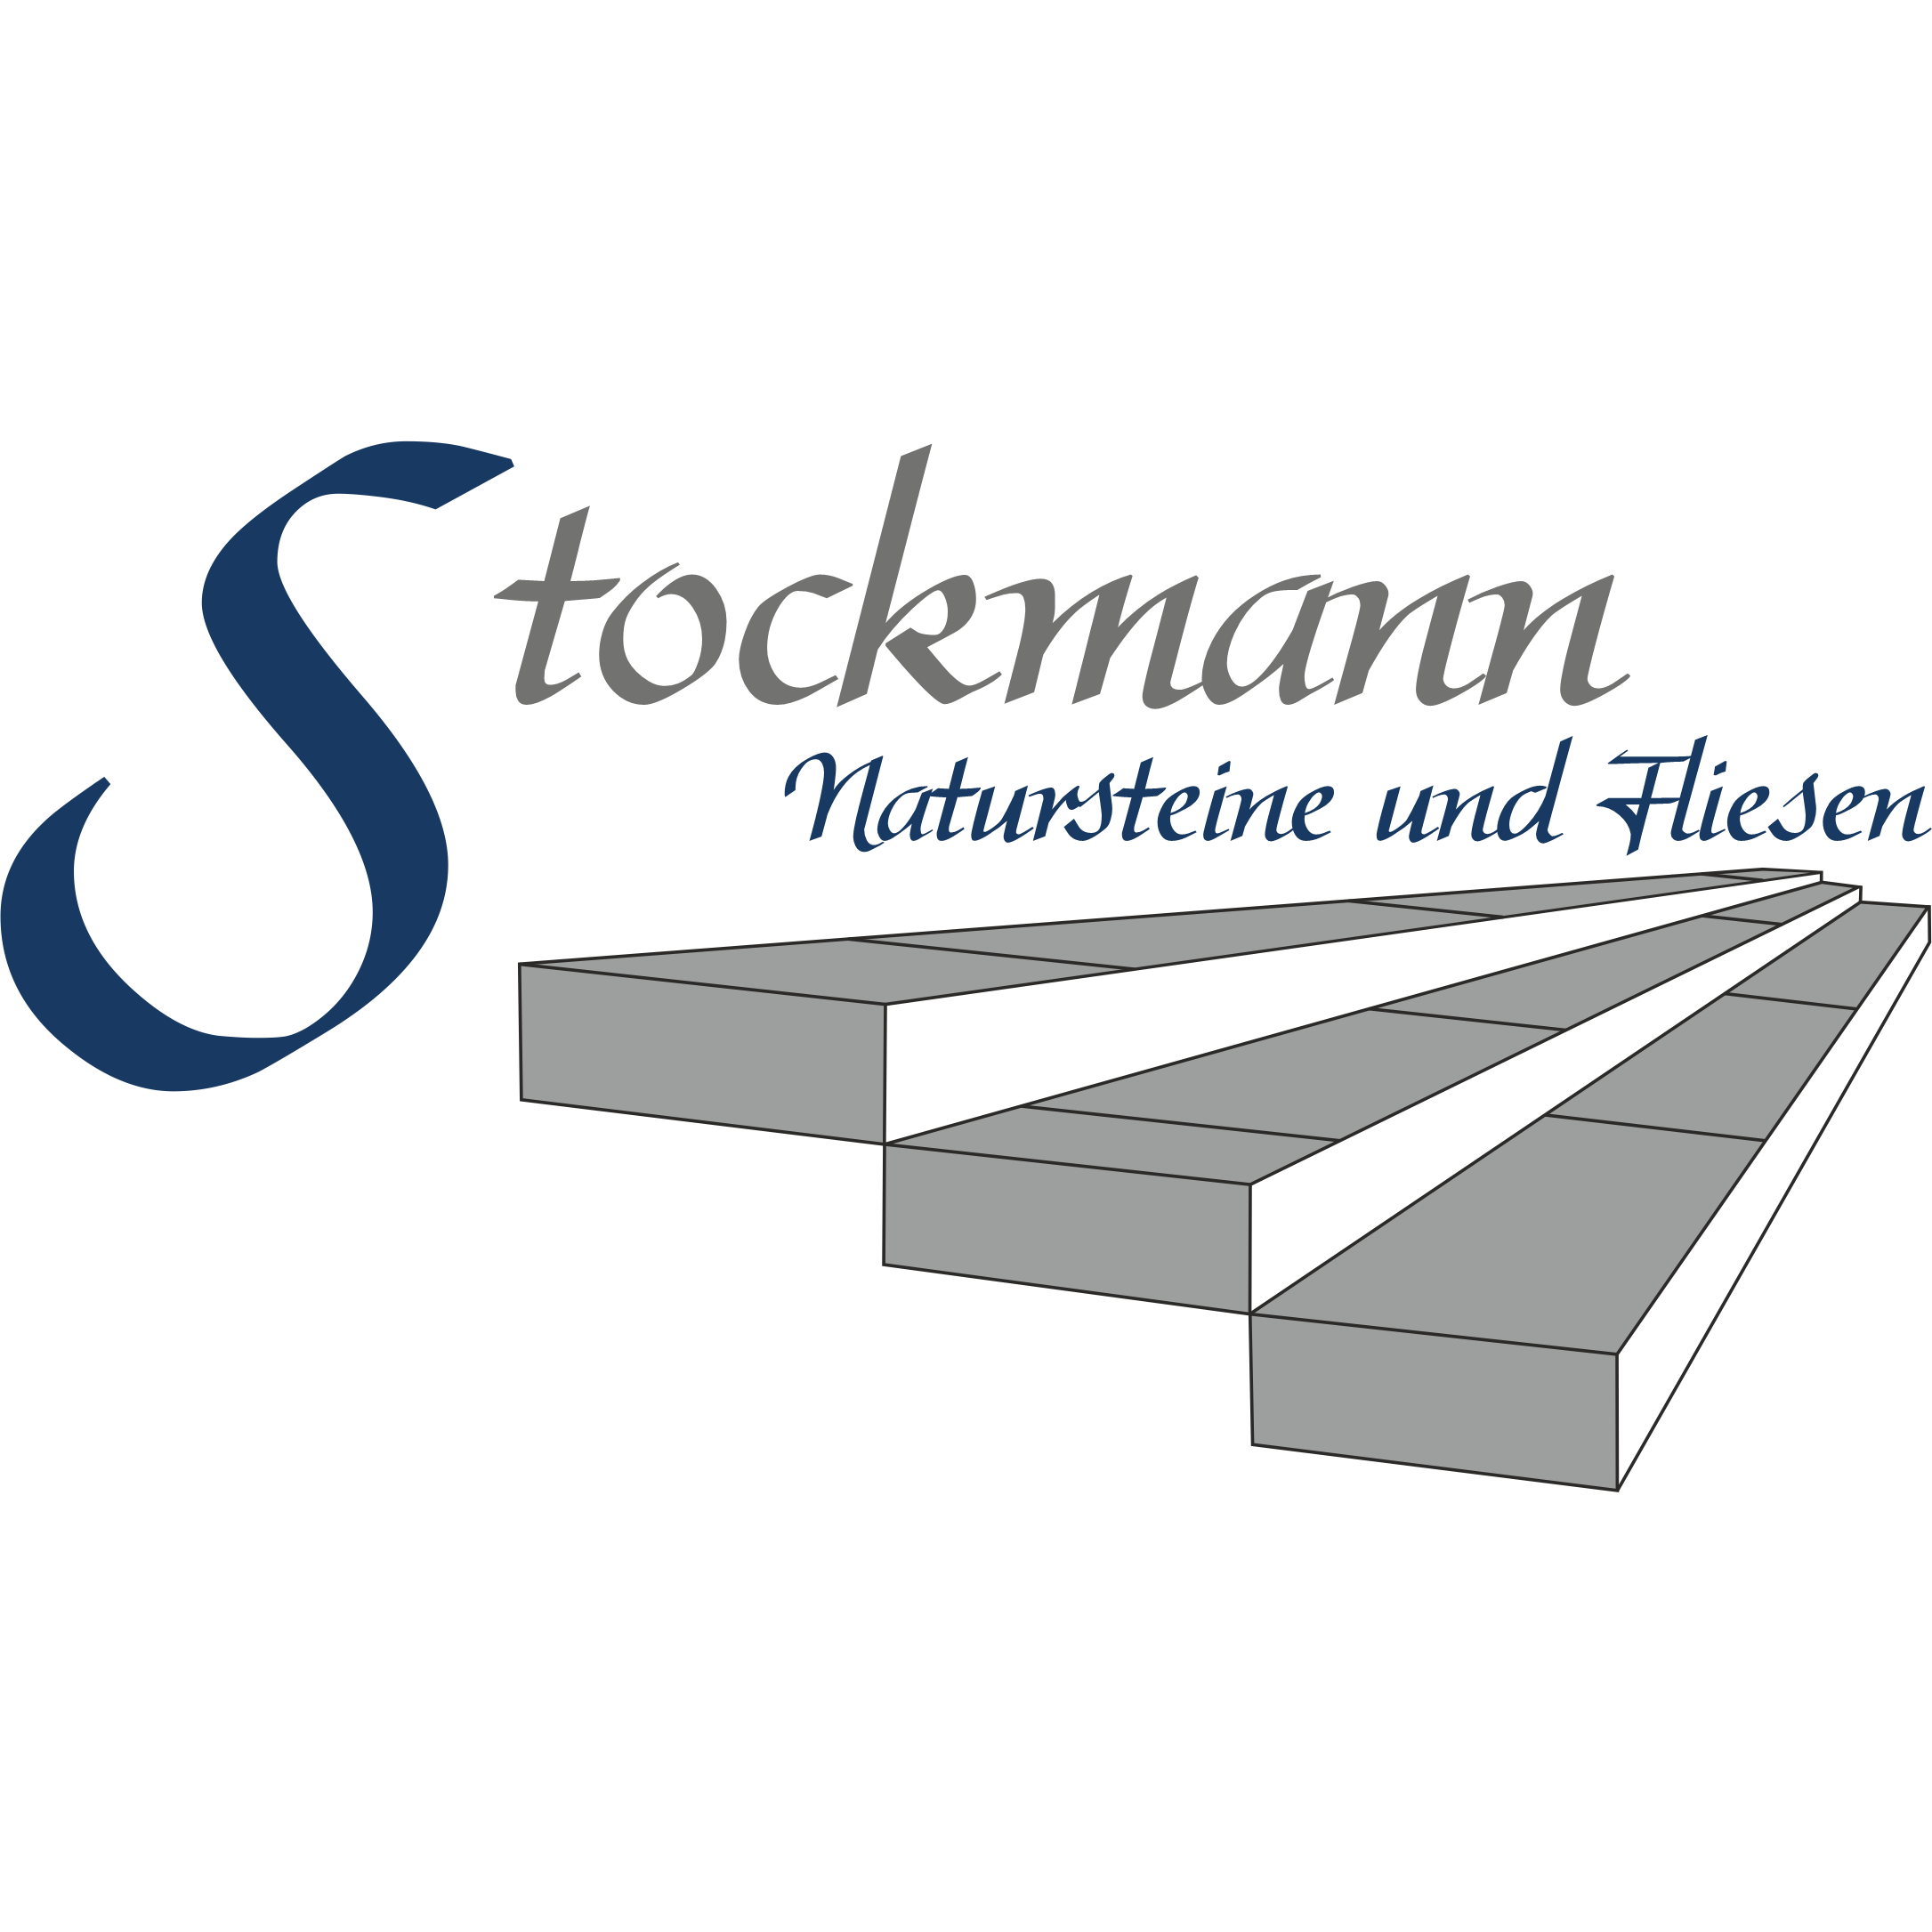 Stockmann - Natursteine und Fliesen Logo